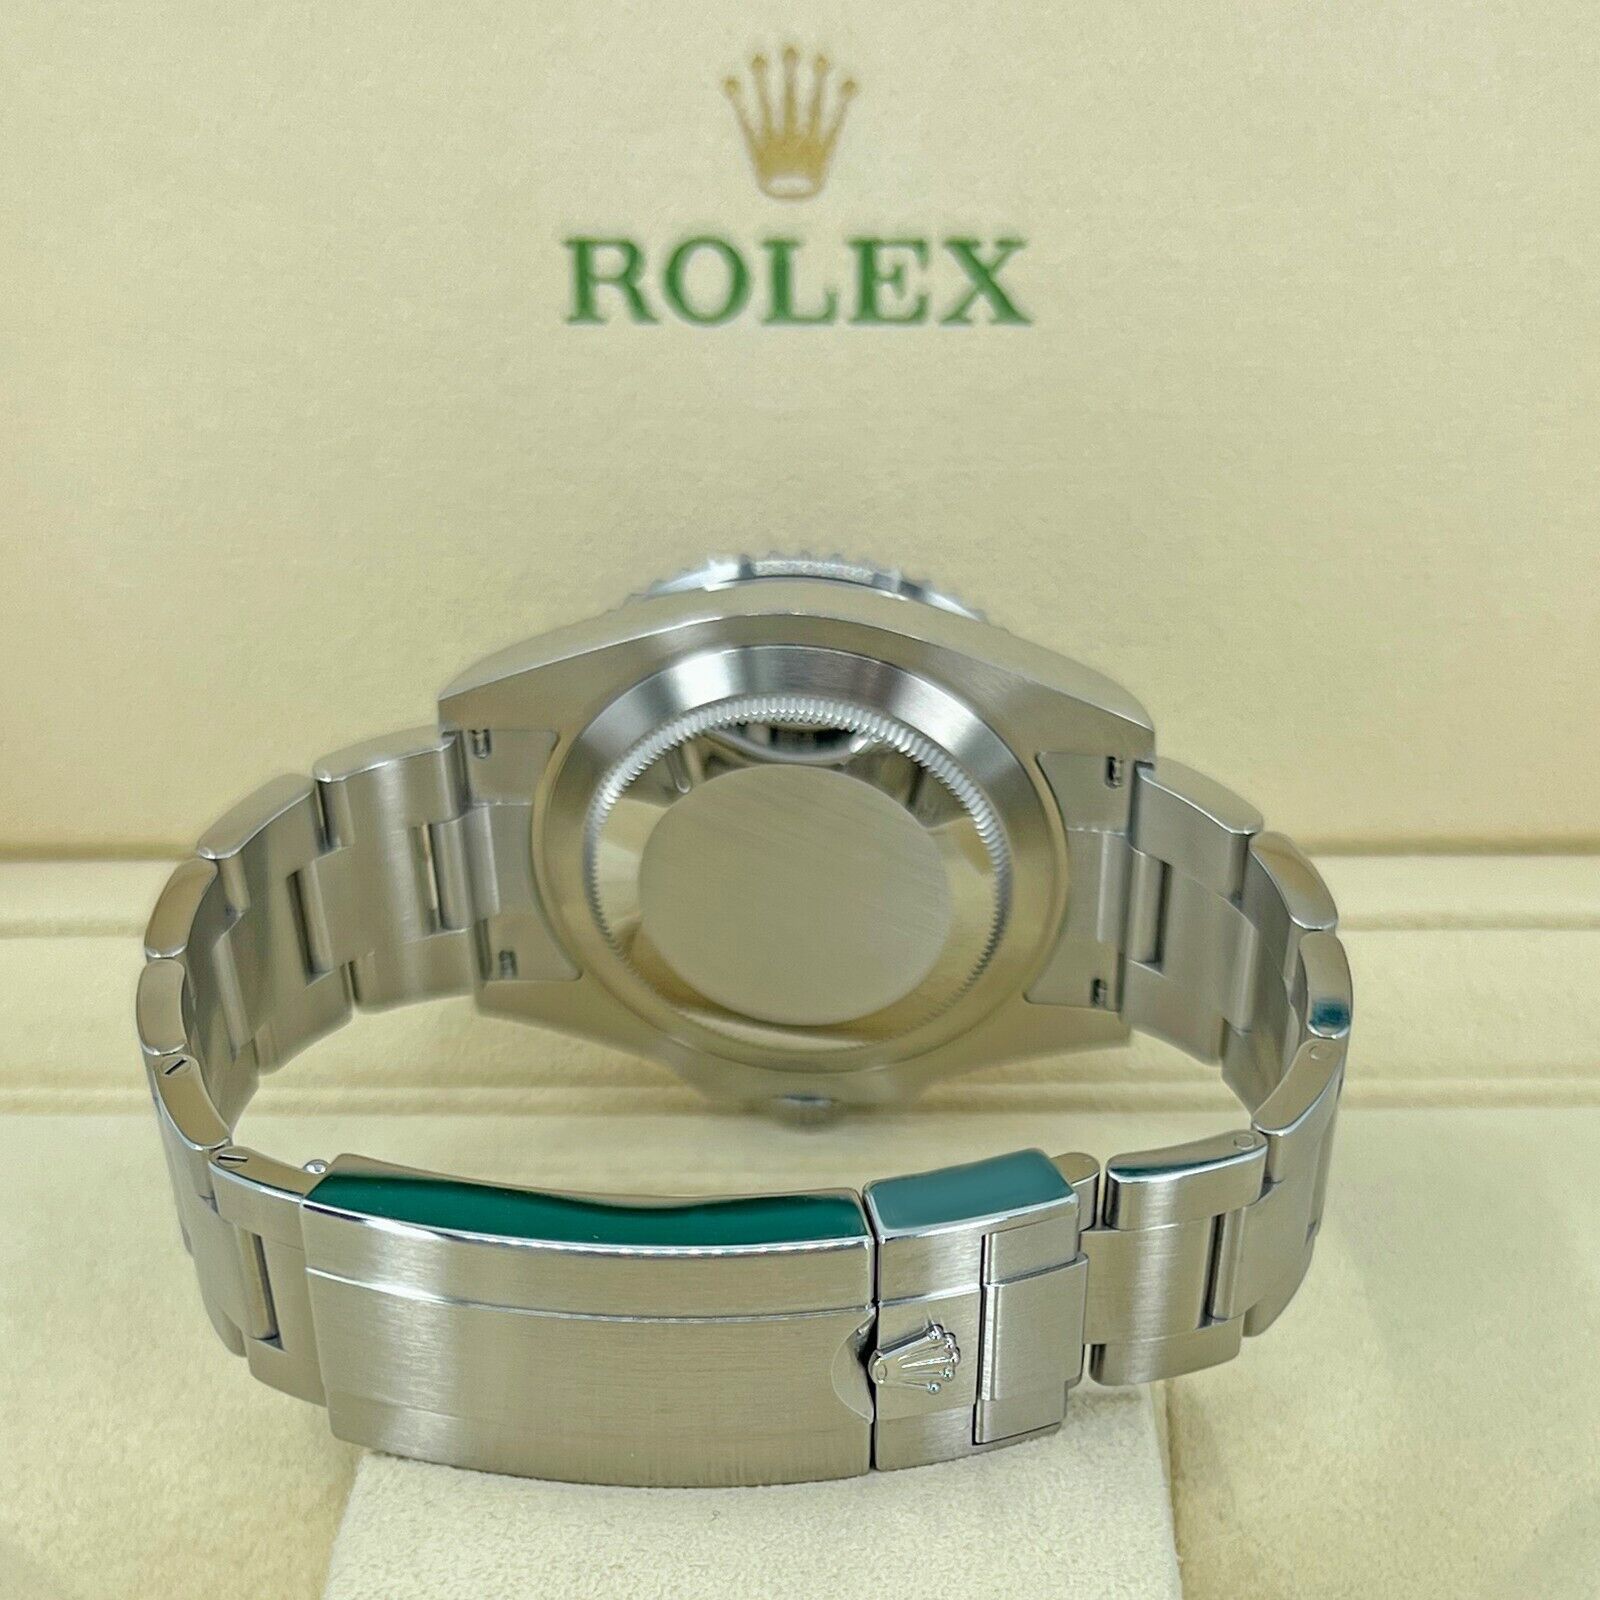 Rolex Submariner Kermit 126610LV Date Oyster Steel Ceramic Bezel Watch 2022 Unworn